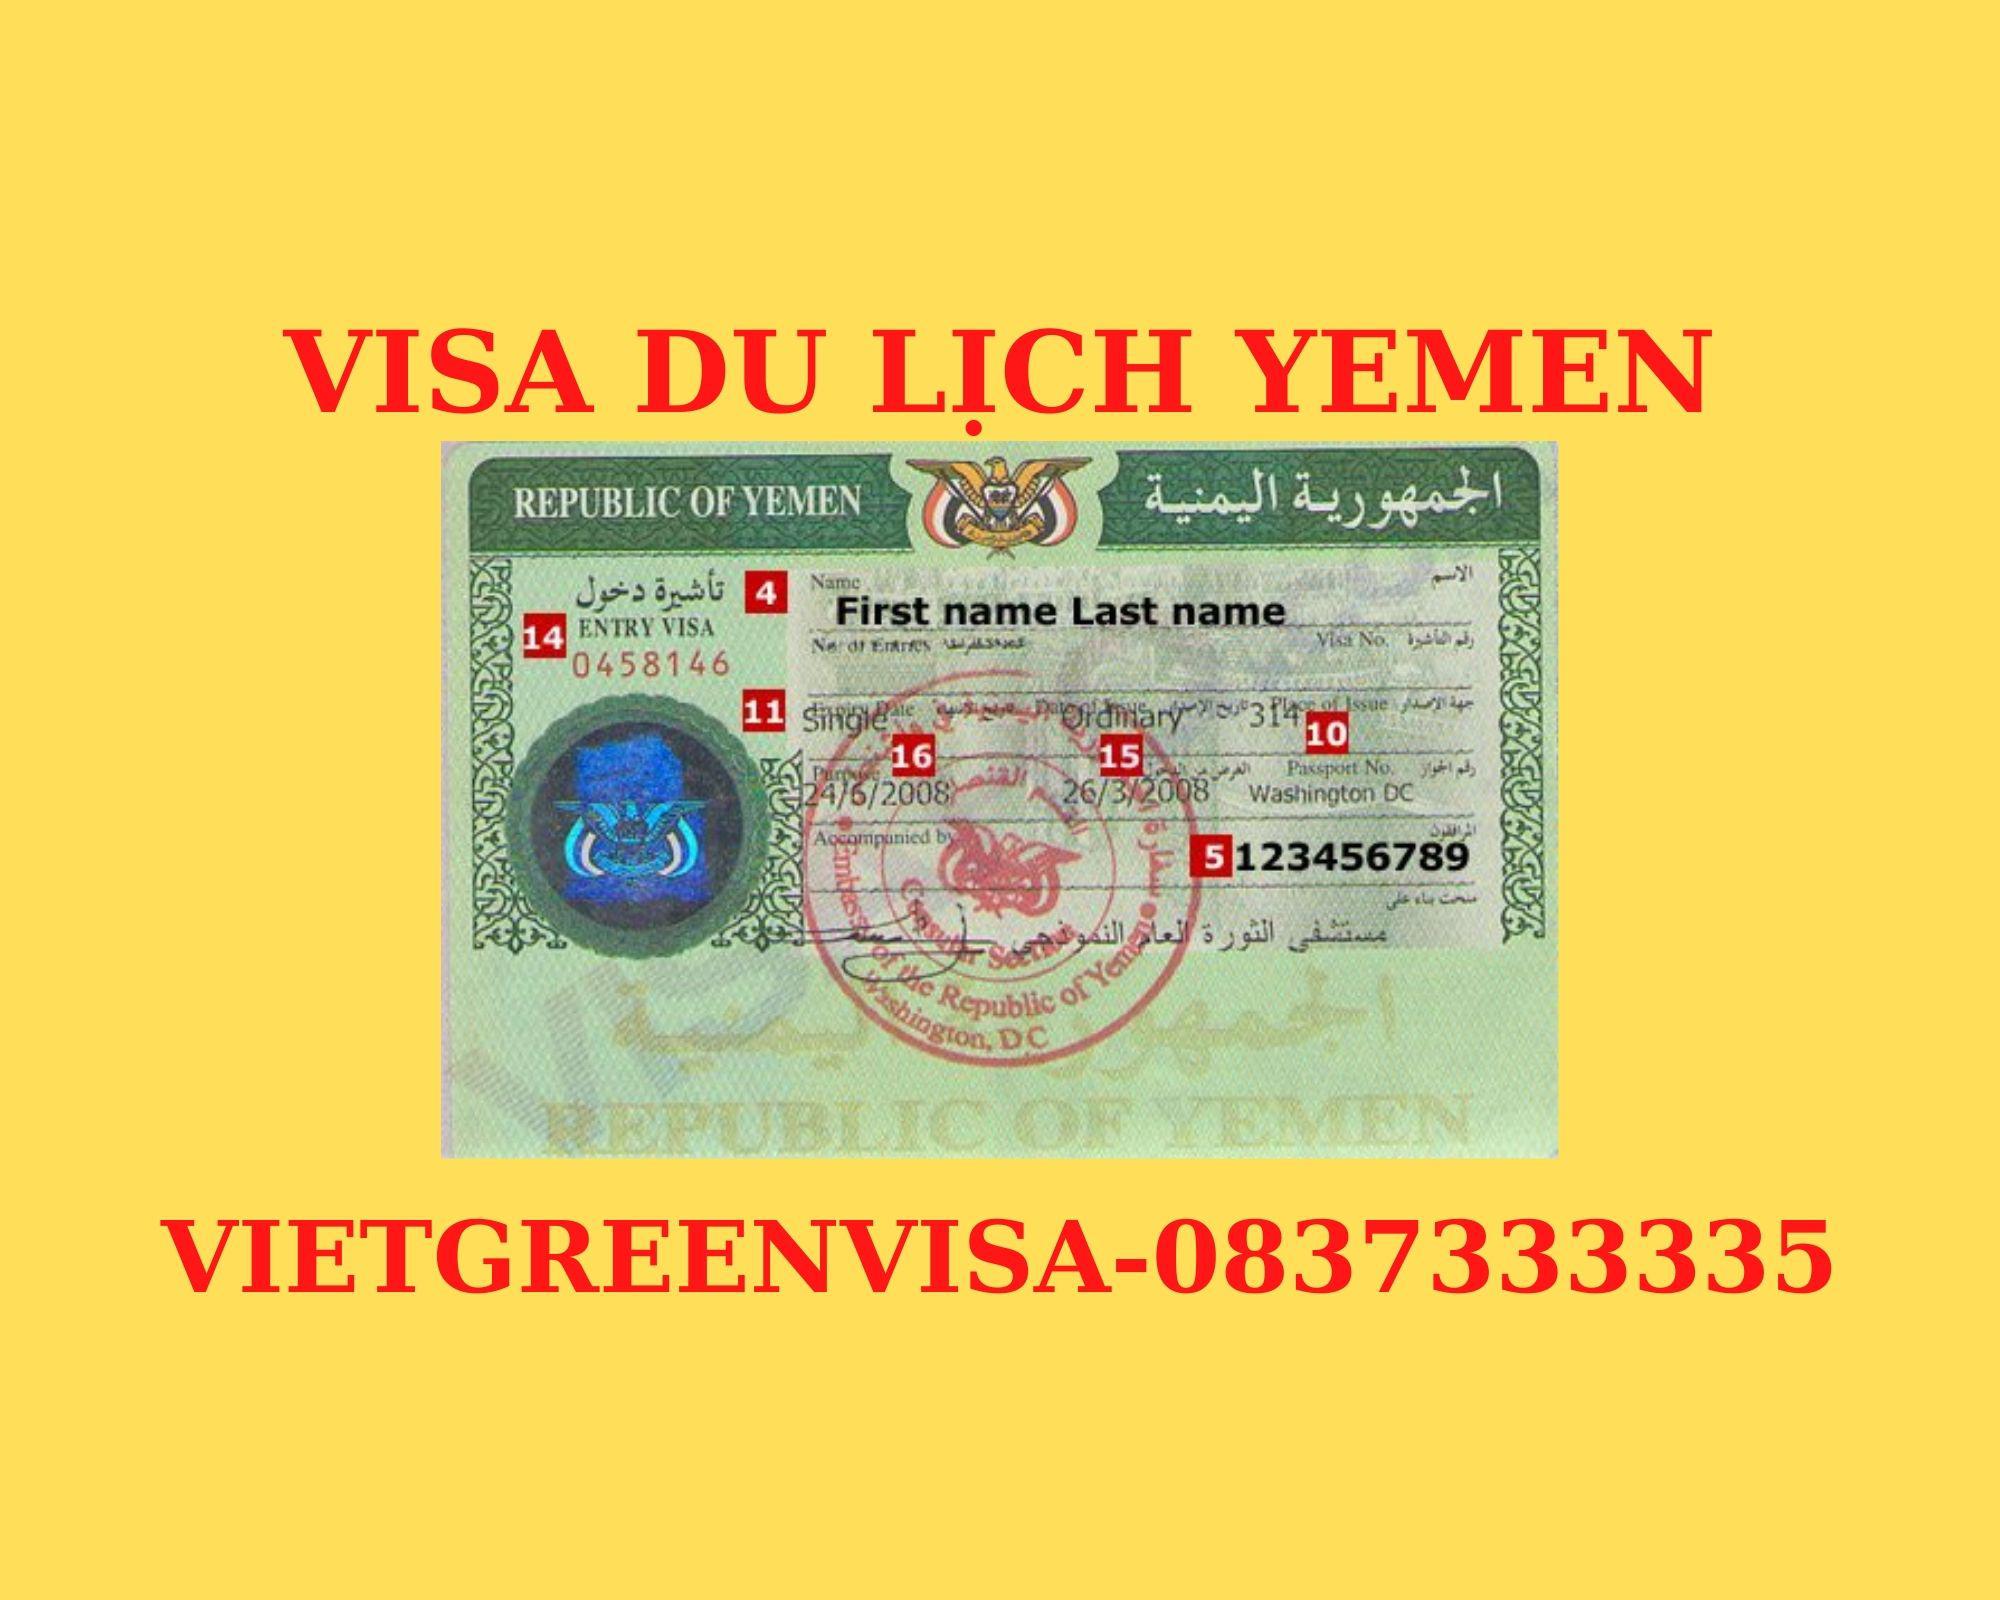 Dịch vụ làm visa du lịch Yemen 14 ngày - Bao đậu